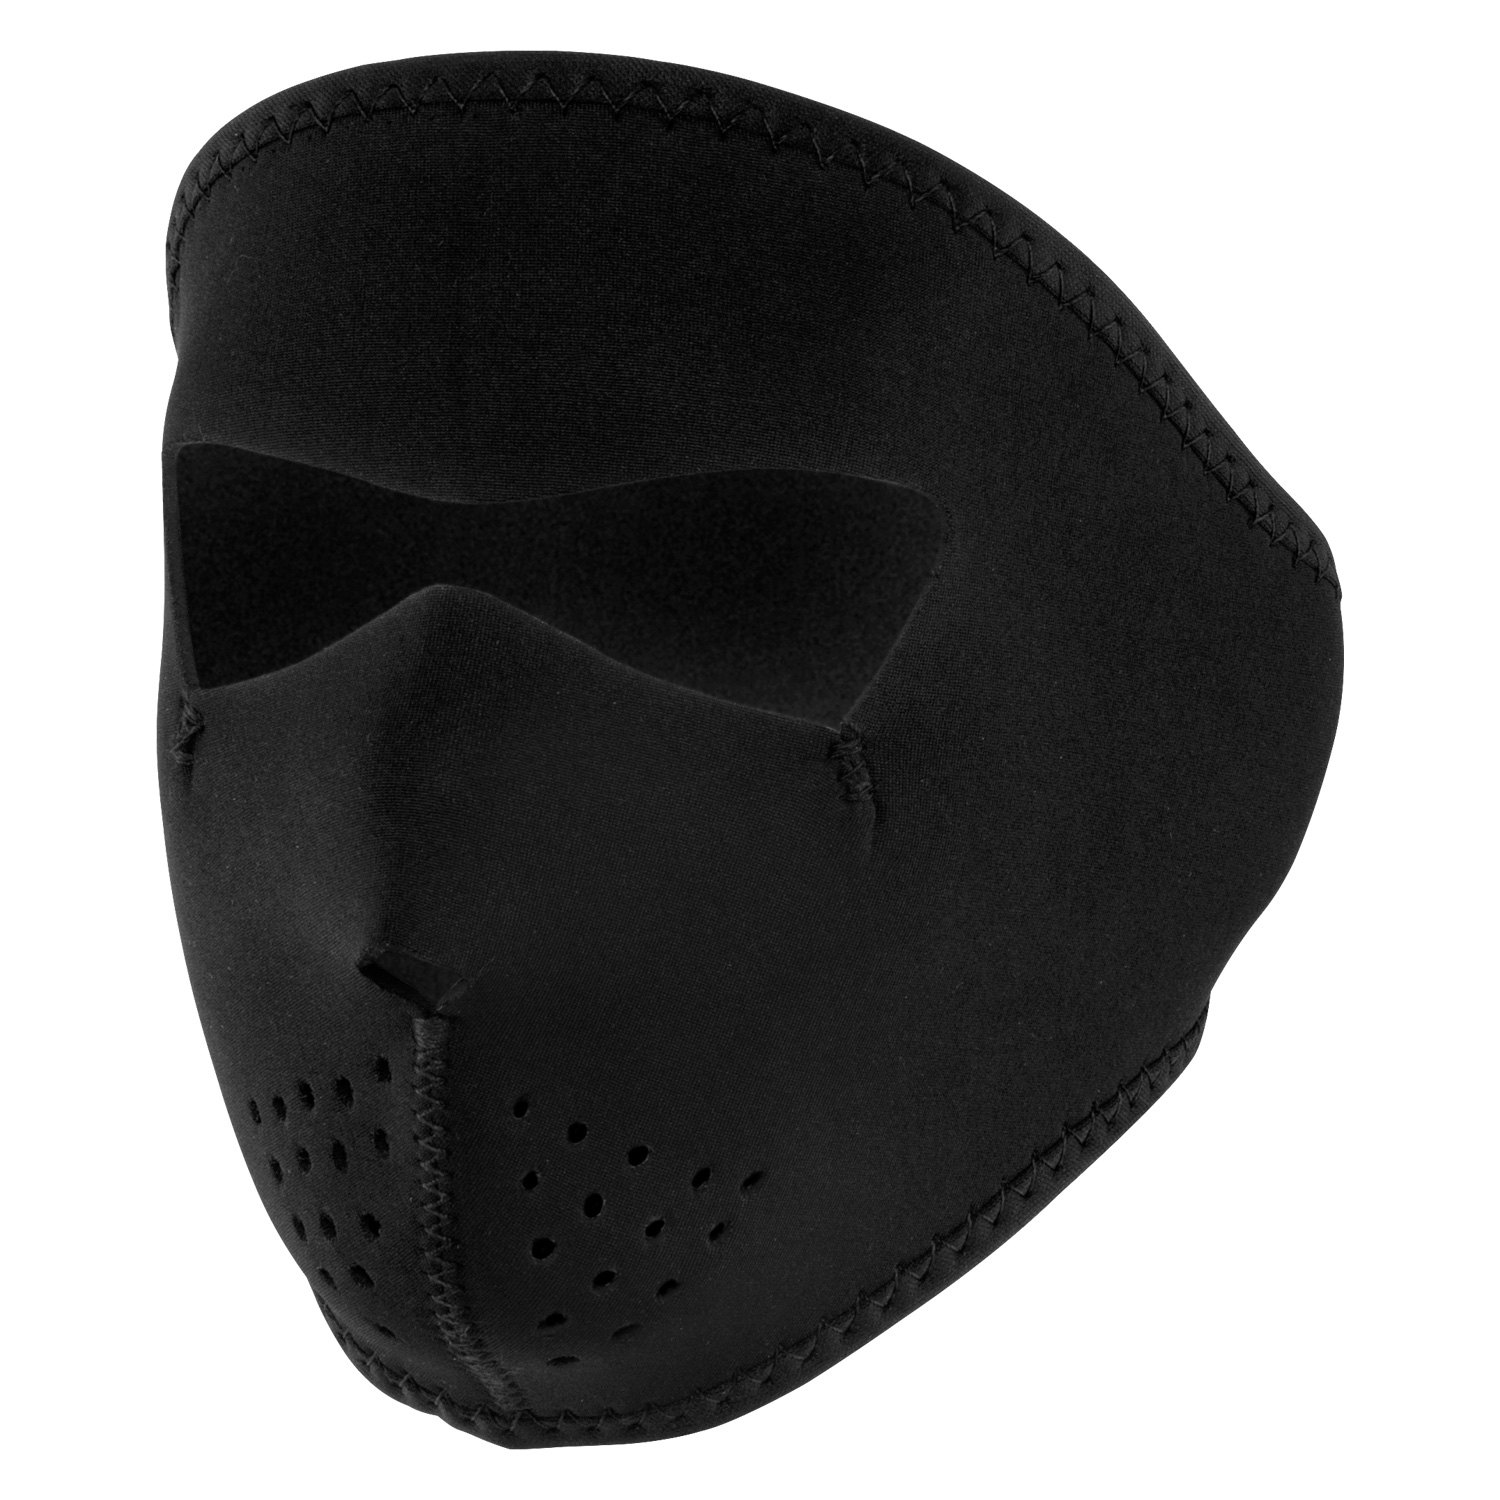 Zan Headgear WNFMS114 Small Face Neoprene Mask Black 